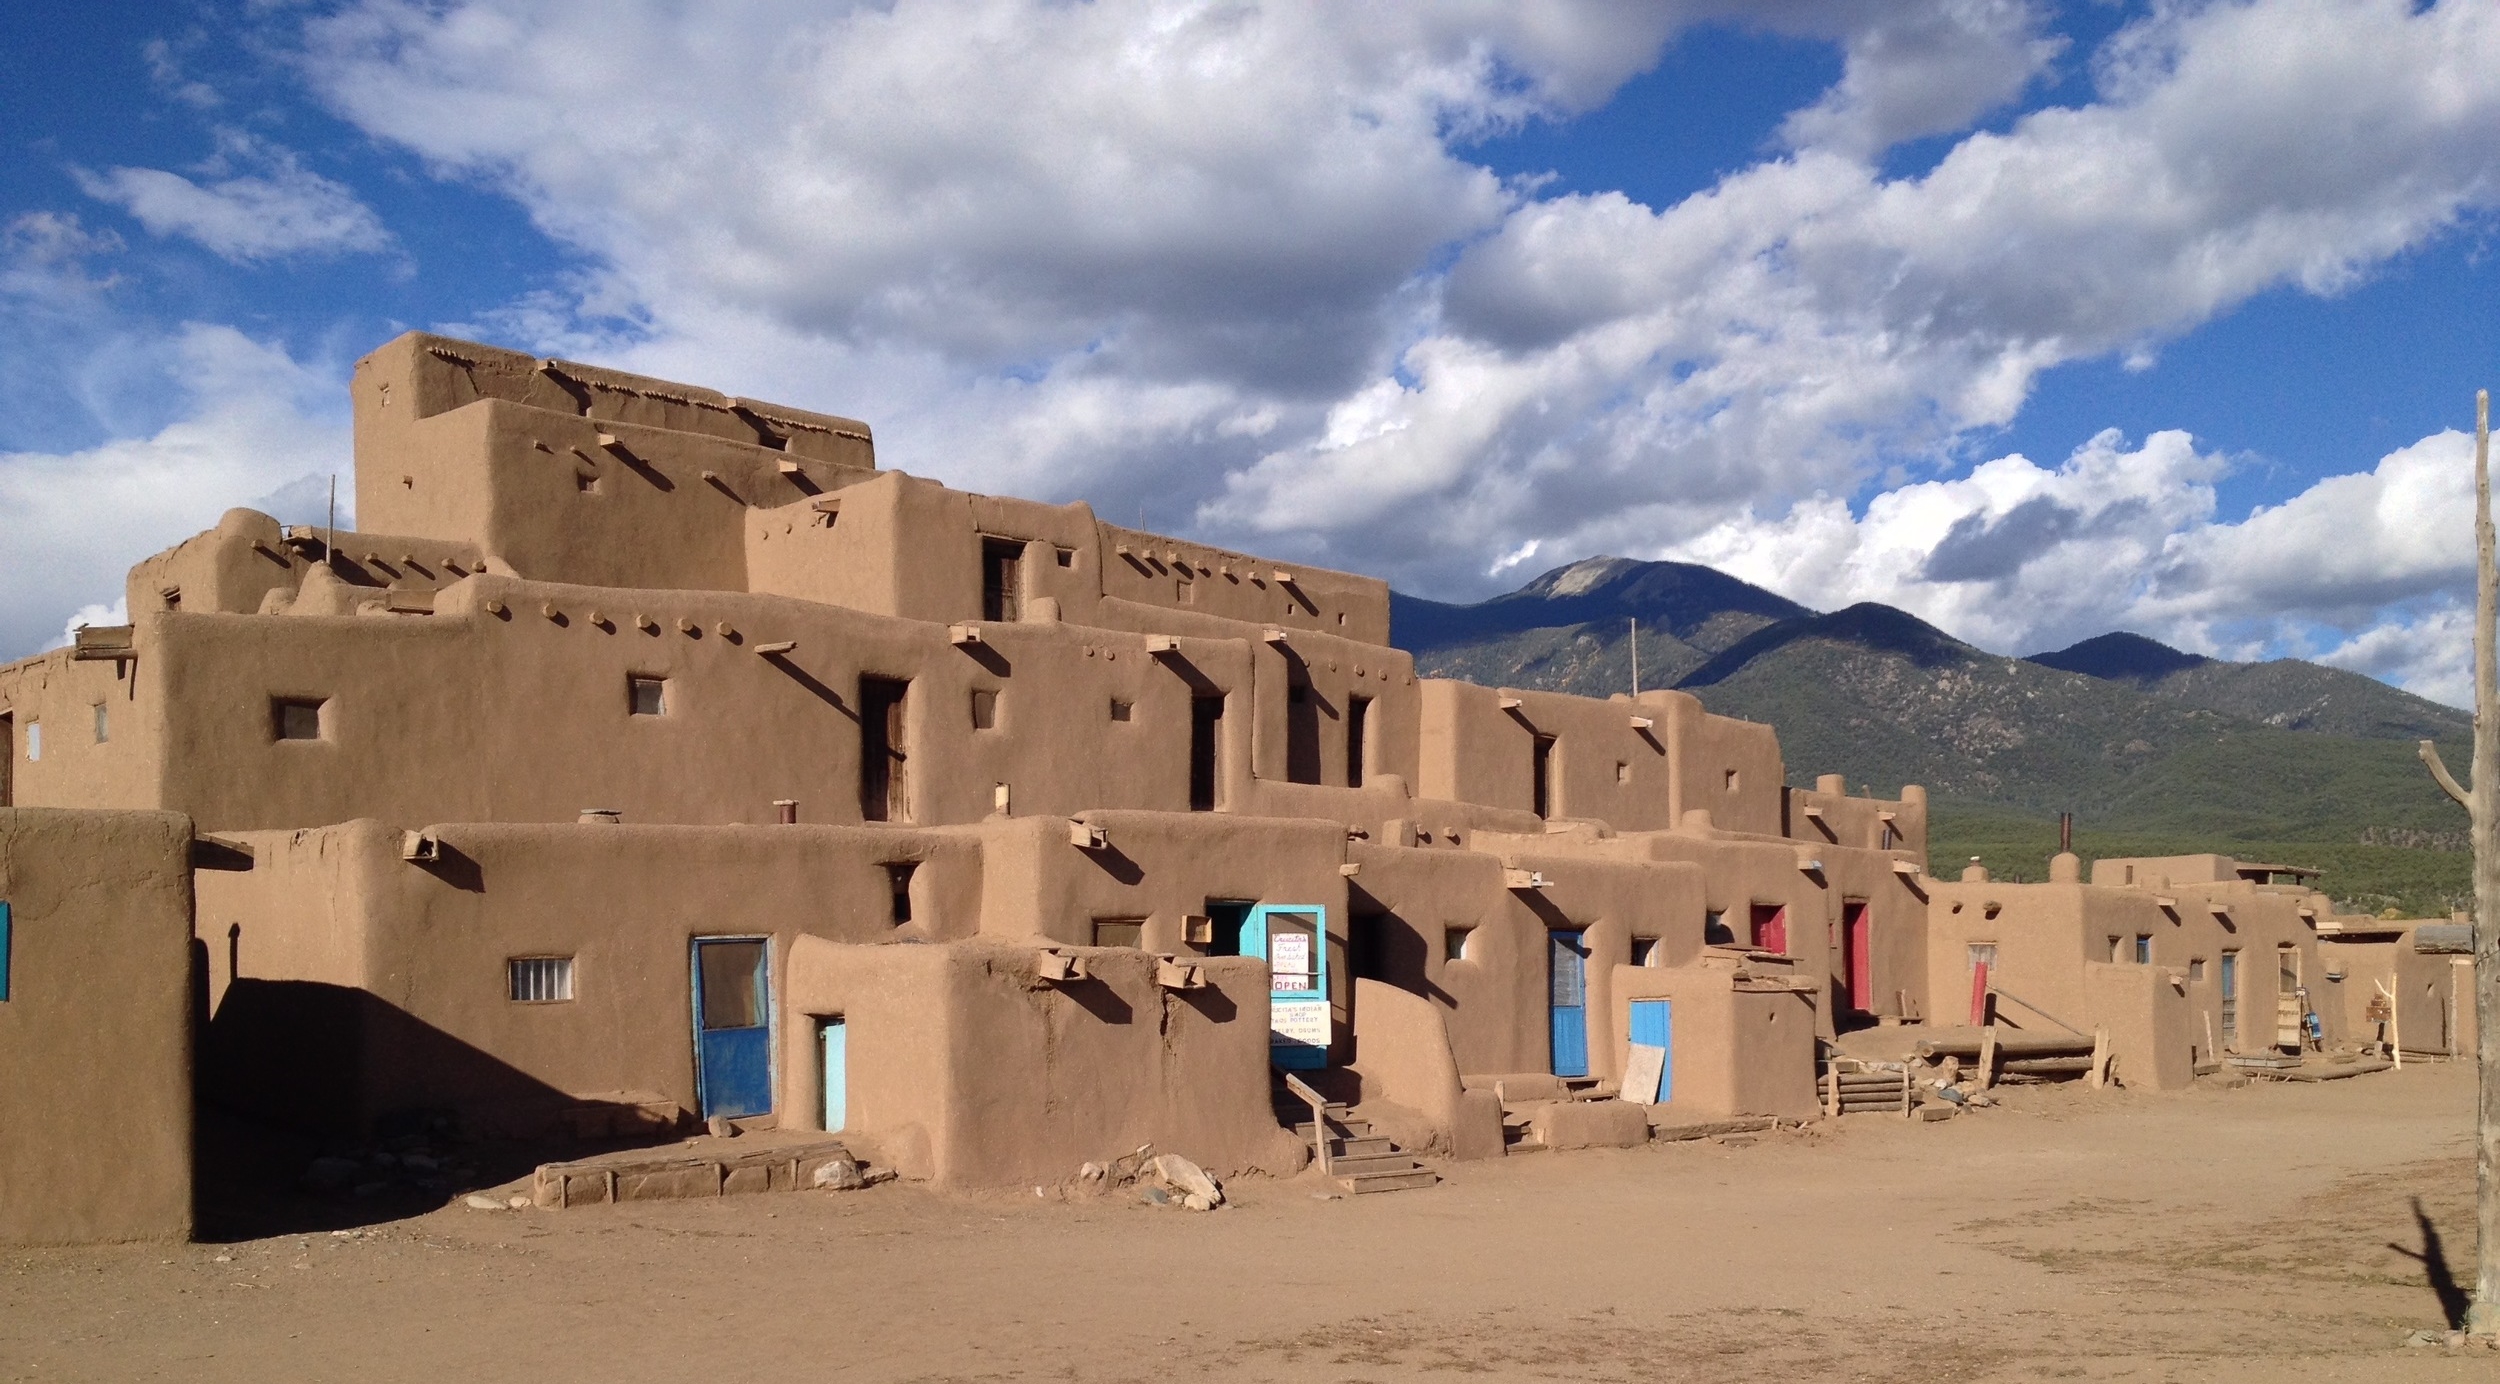   Taos Pueblo  